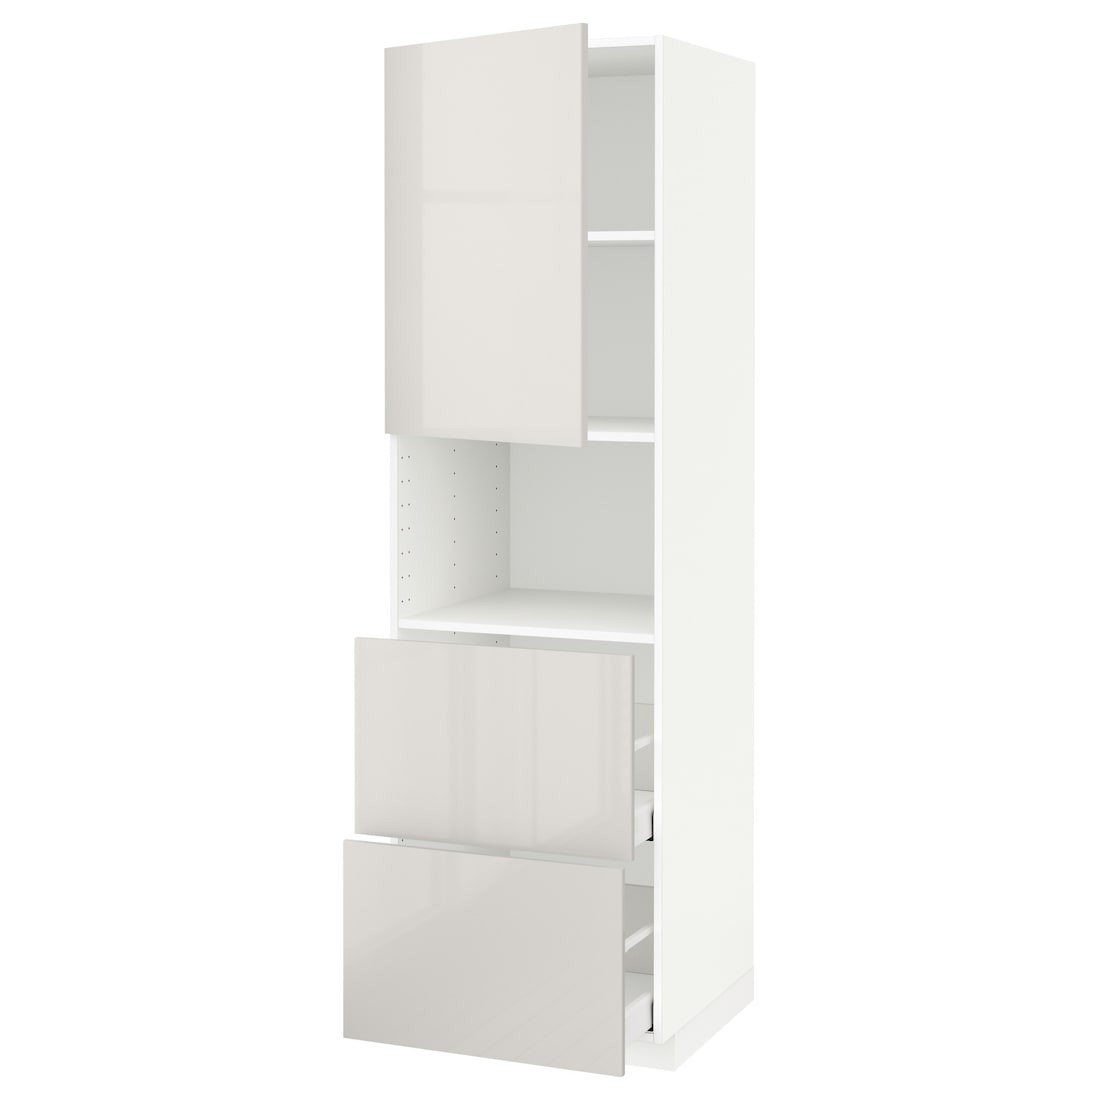 METOD МЕТОД / MAXIMERA МАКСИМЕРА Высокий шкаф для микроволновки с дверями / 2 ящика, белый / Ringhult светло-серый, 60x60x200 см